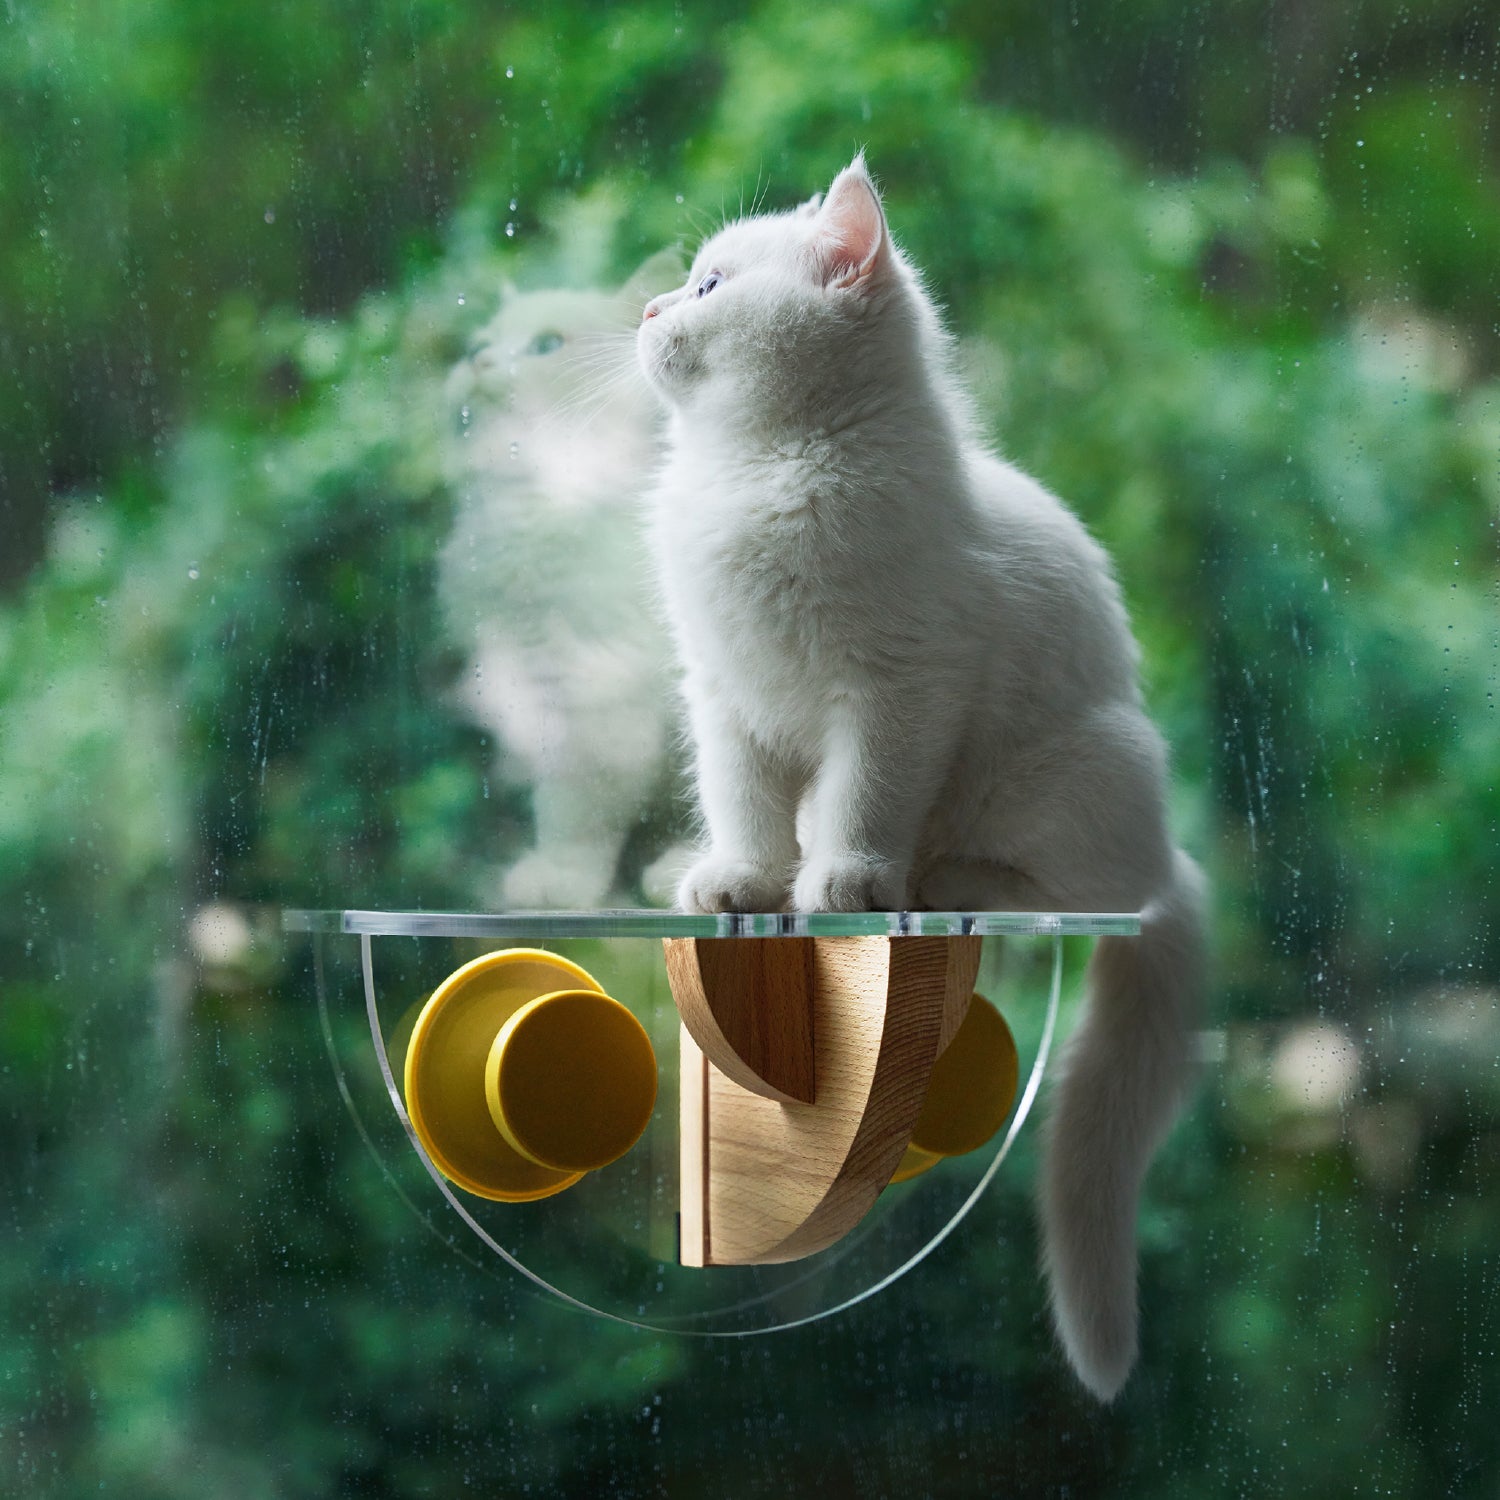 Cat Window Perch - Sunbathing Time